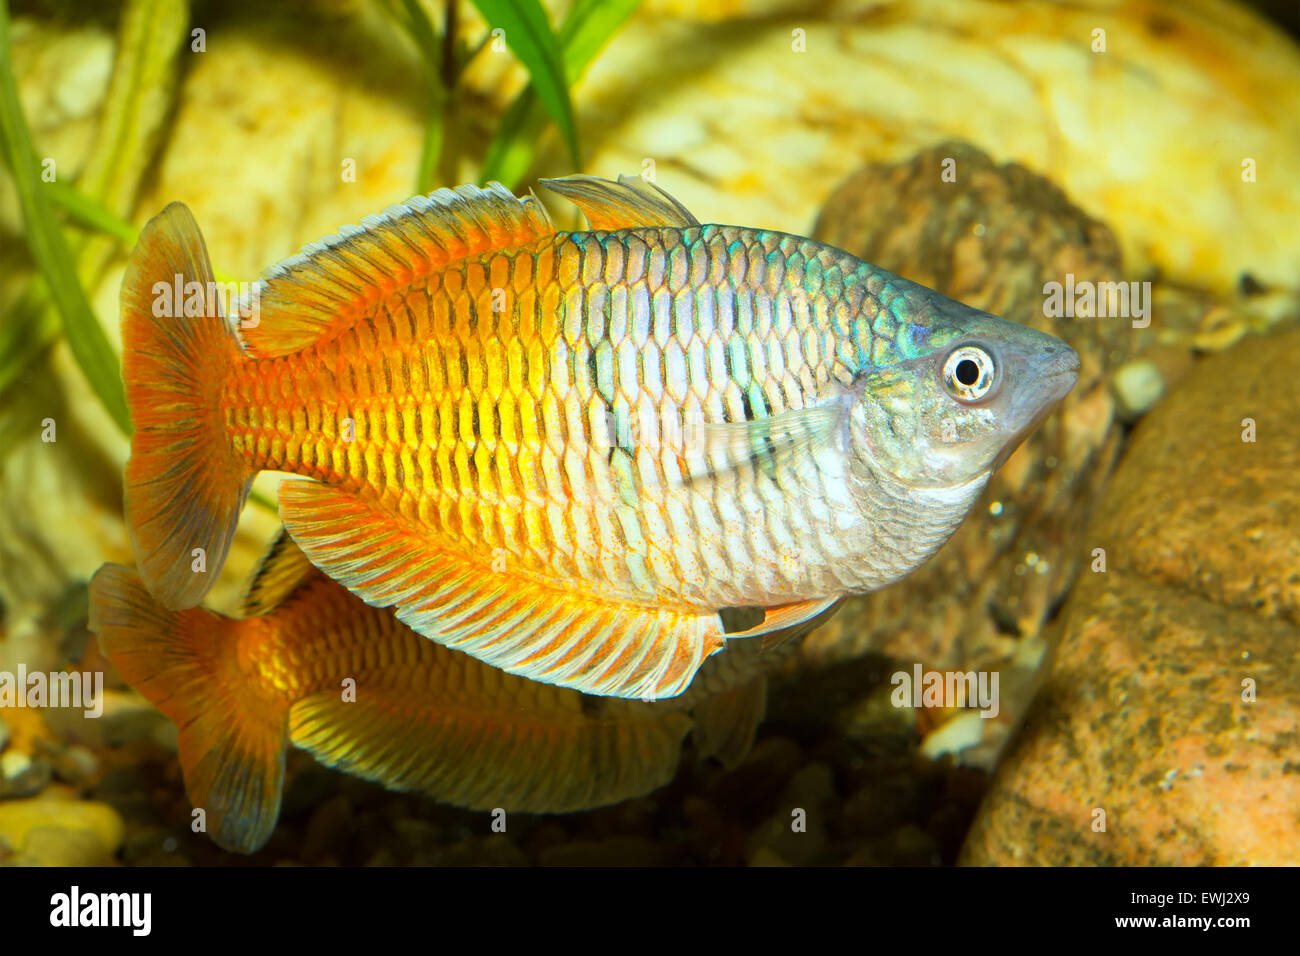 Rainbow fish from genus Melanotaenia in aquarium. Stock Photo